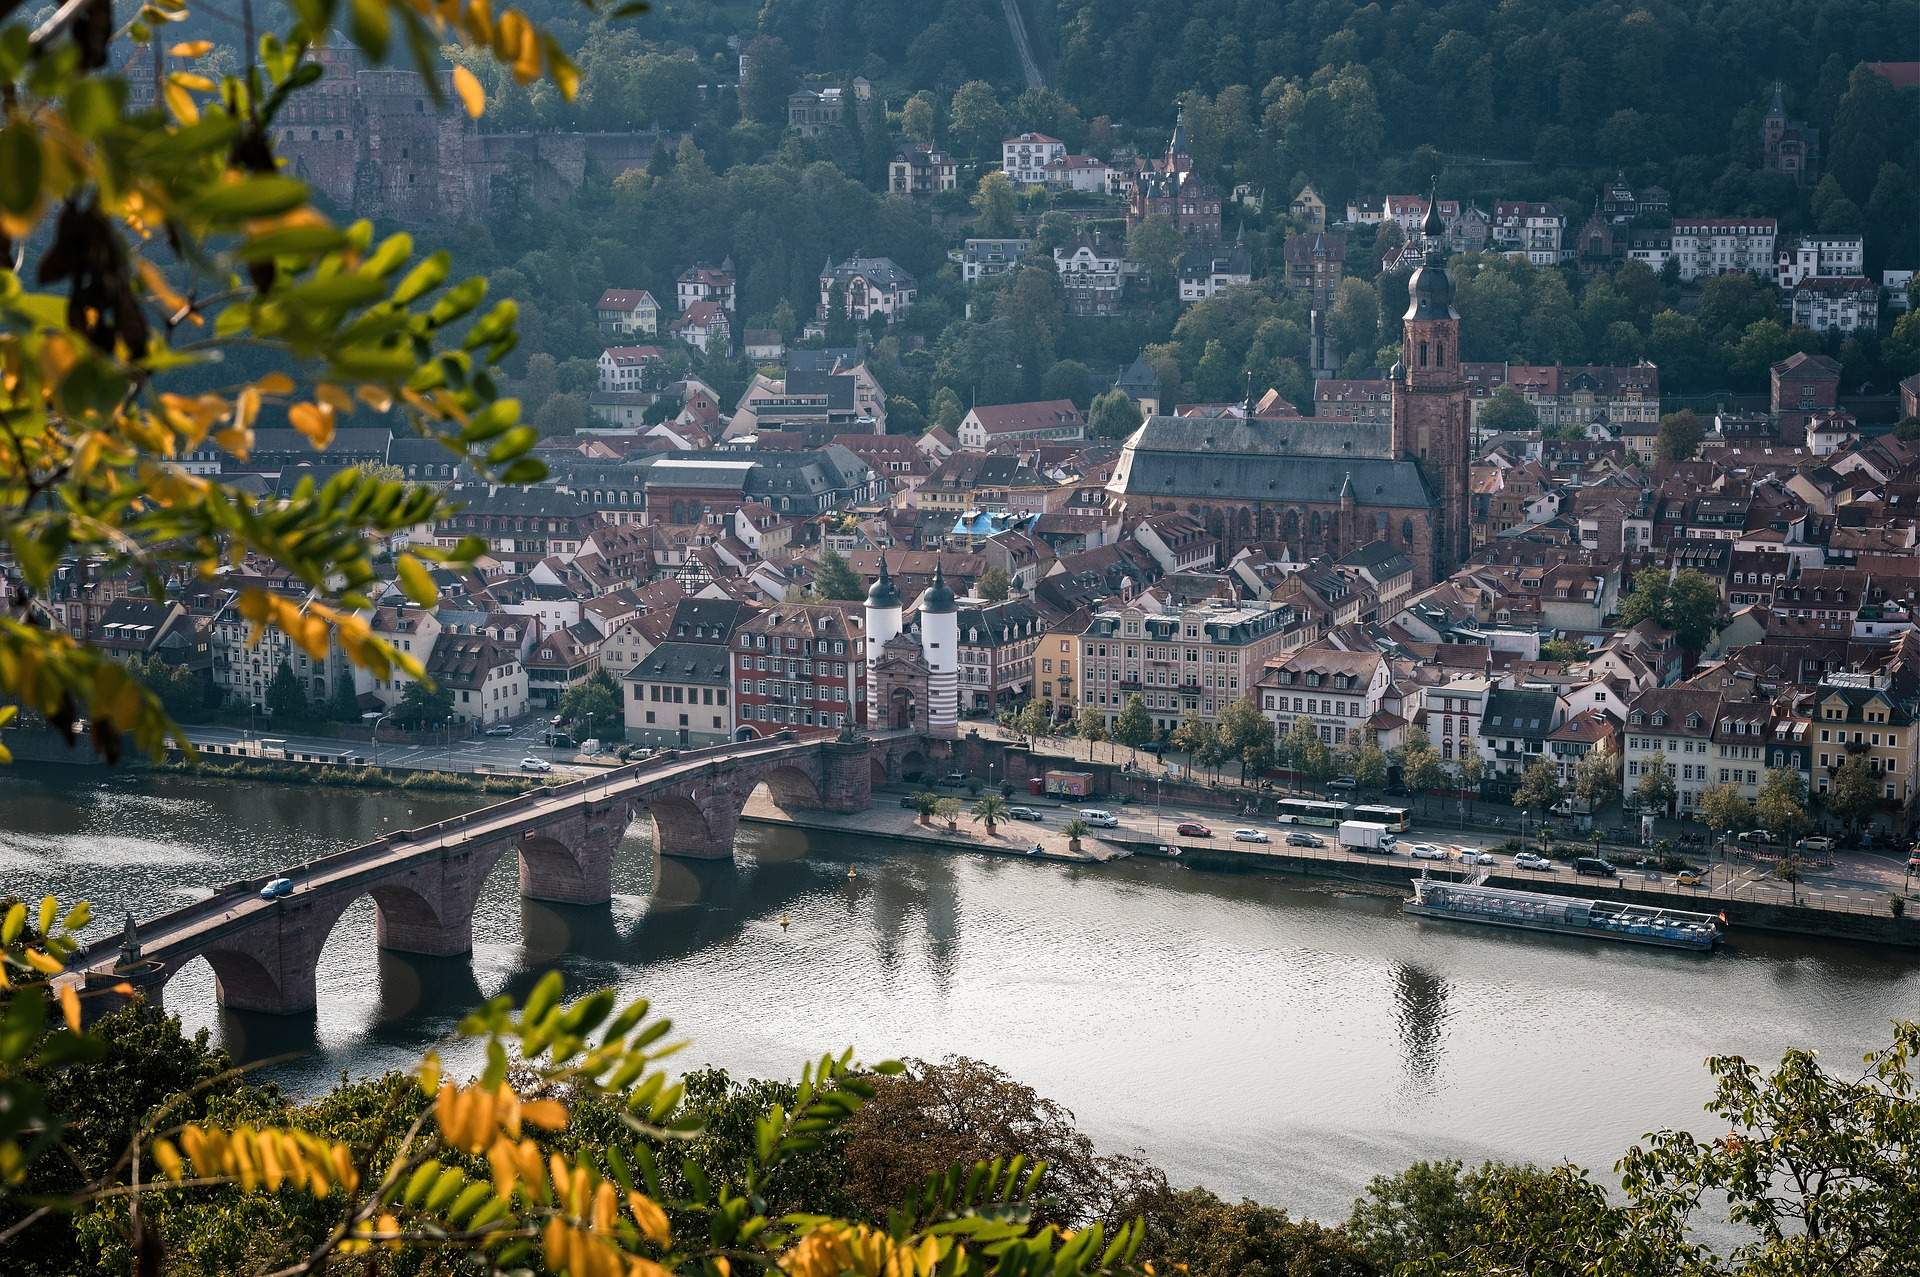 Busreis wandelvakantie Heidelberg ©Peter H from Pixabay